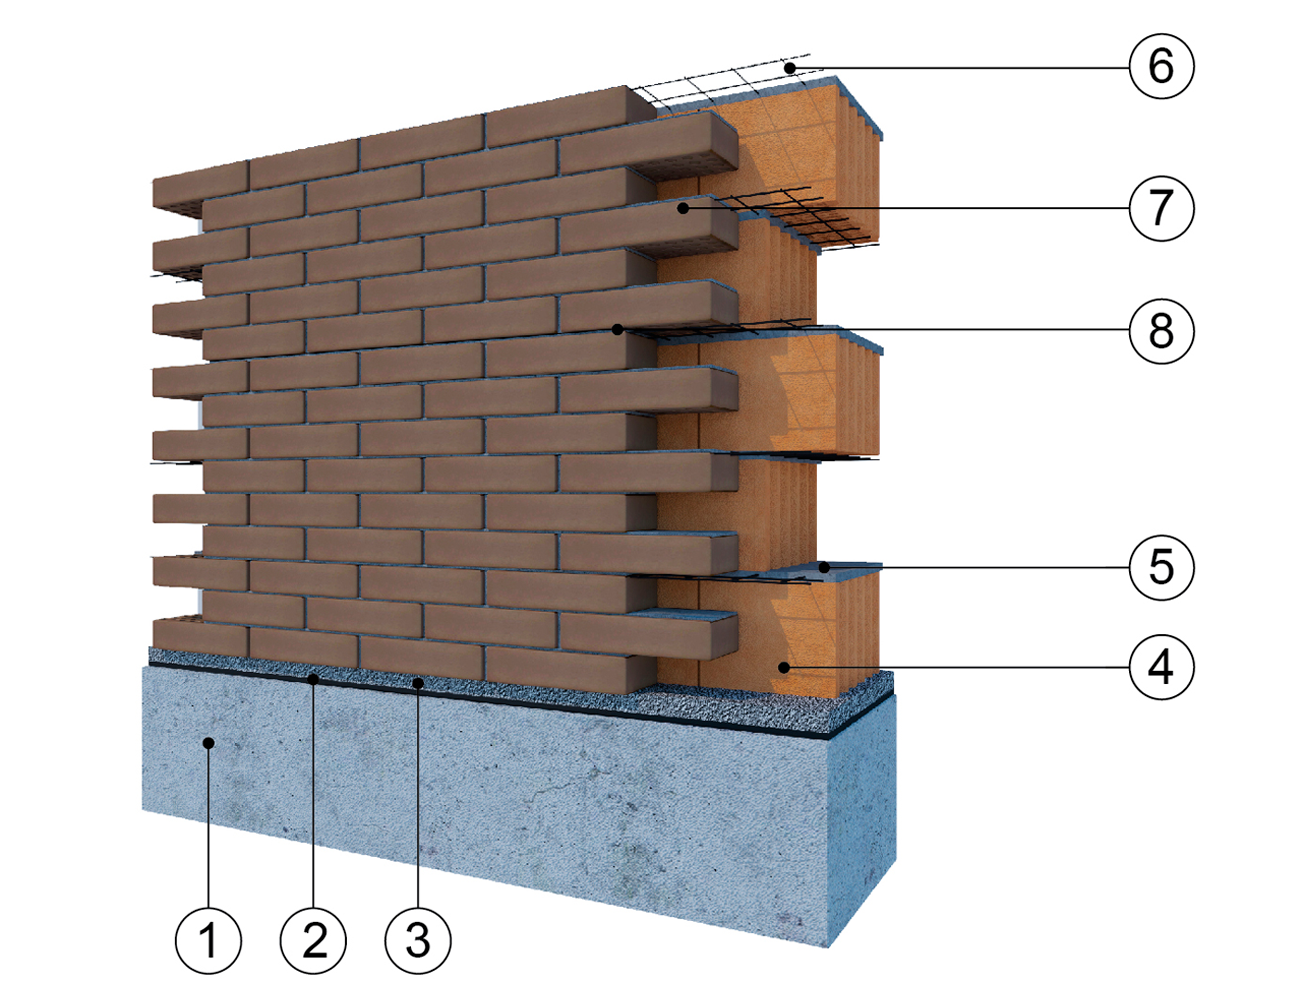 Фасадная система кирпичной облицовки с применением пустотелых керамических блоков